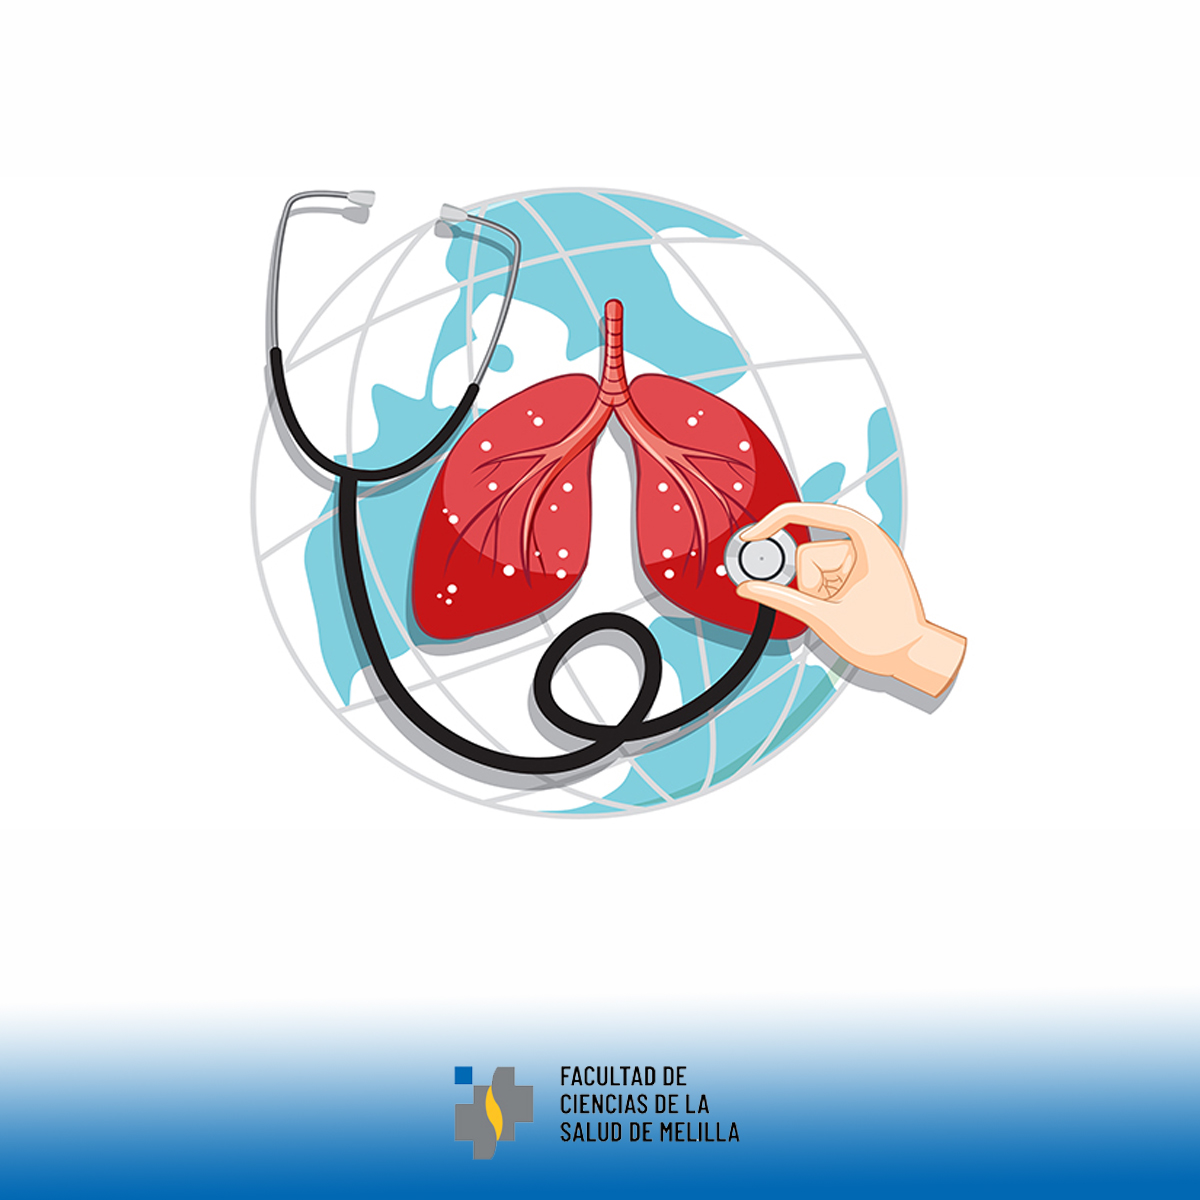 Día Mundial de la Hipertensión Pulmonar